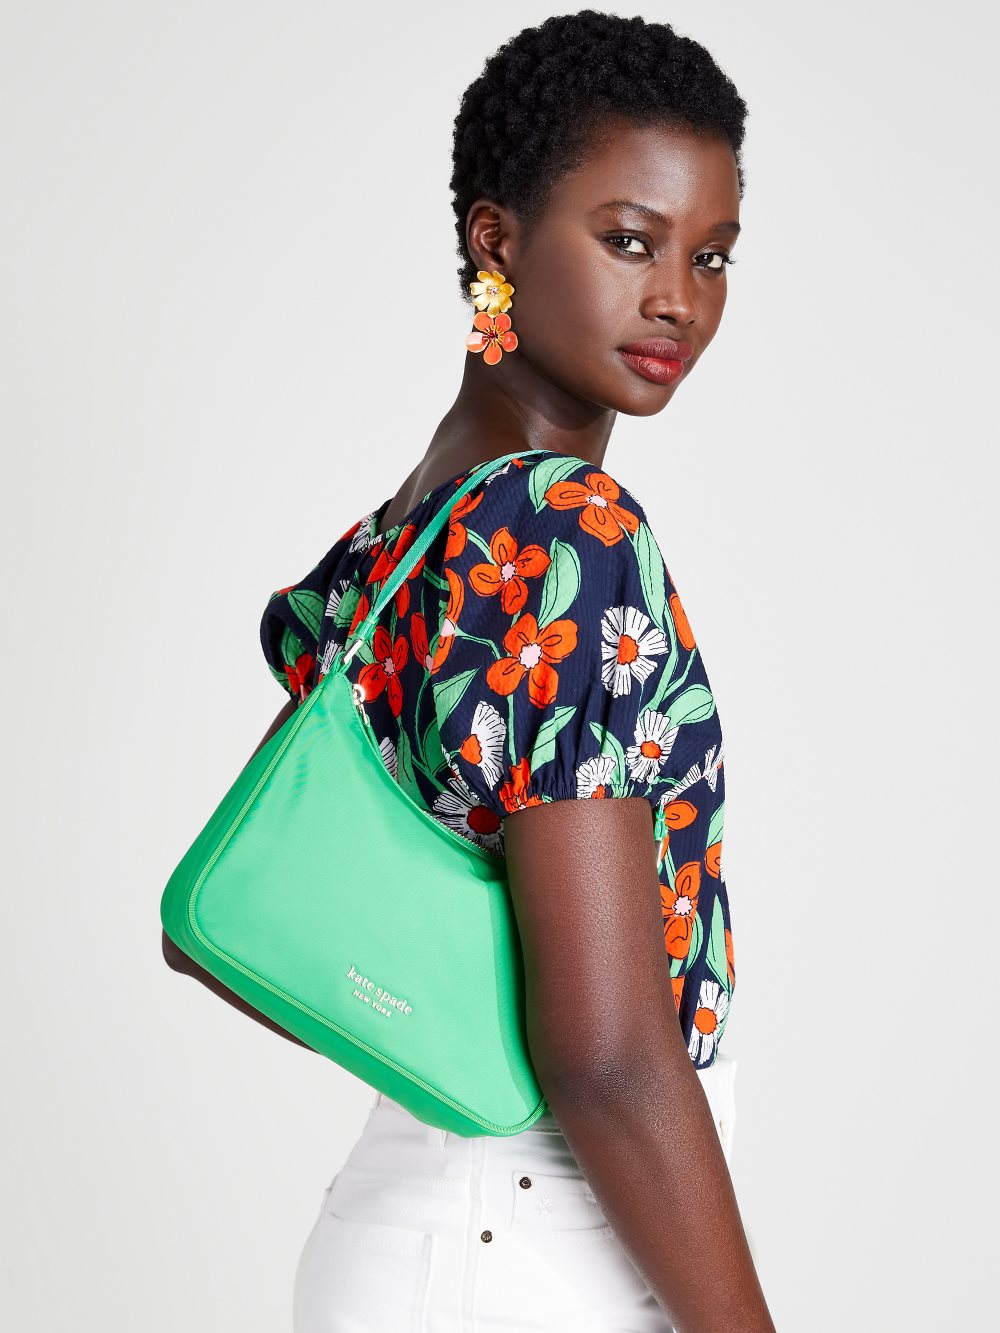 Women's fresh greens the little better sam nylon small shoulder bag | Kate Spade